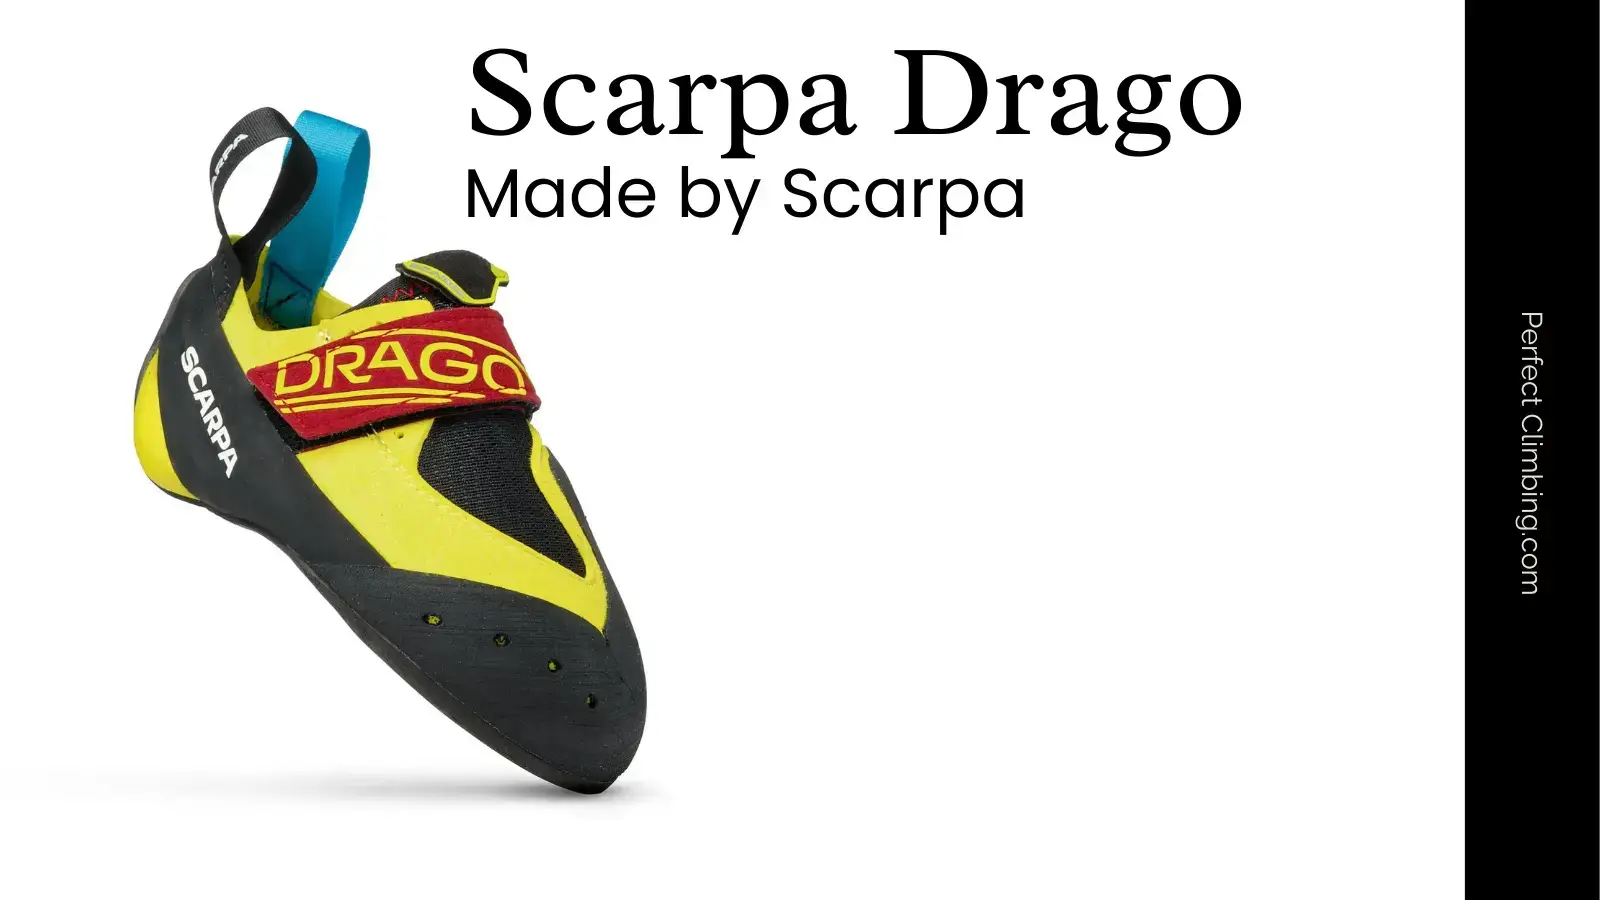 Scarpa Drago review